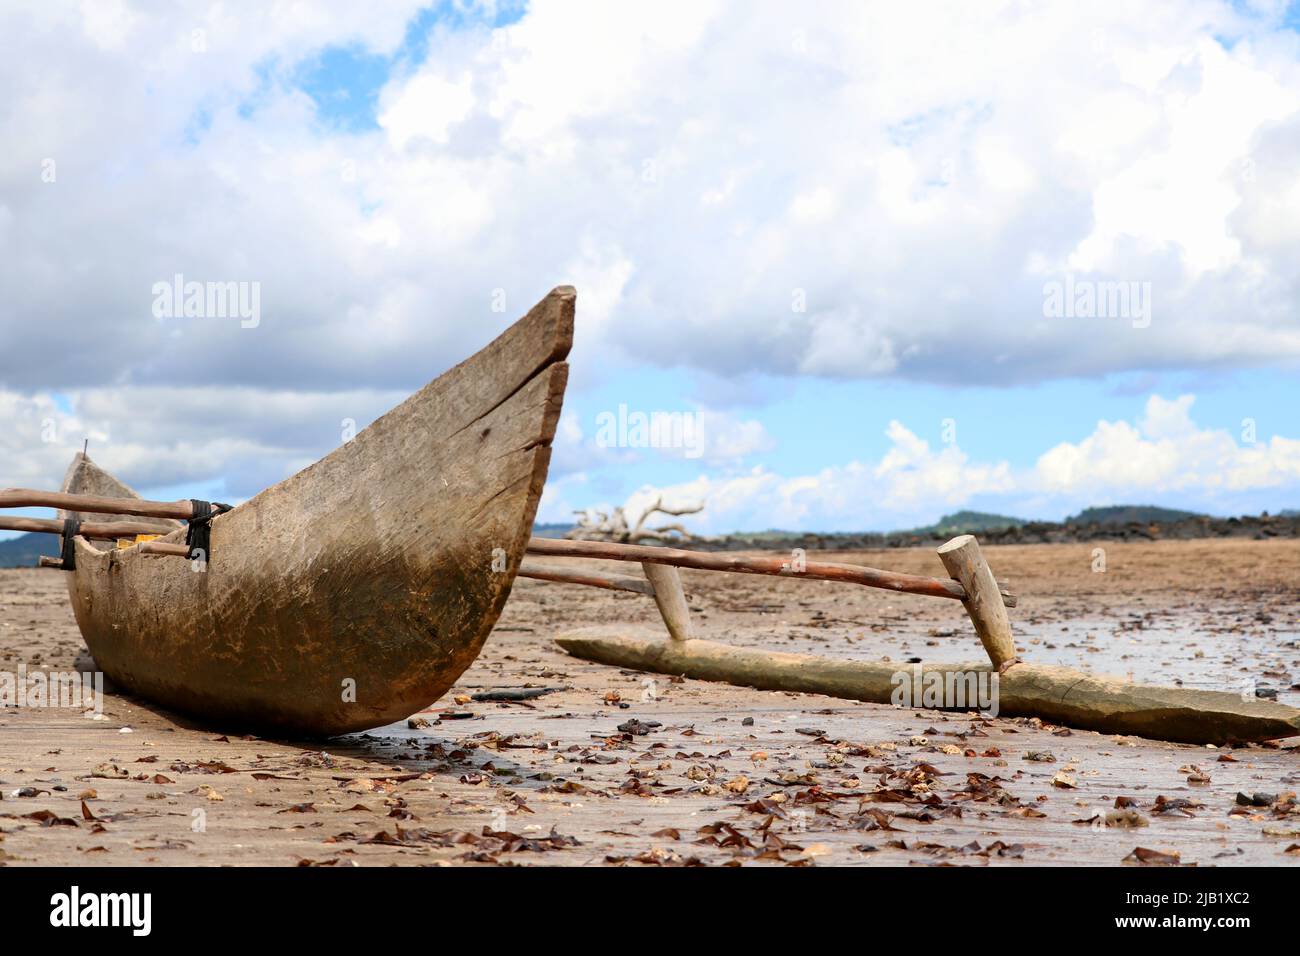 Ein Fischerboot wartet auf Restaurierung am Strand. Verlassen steht es einsam am Meeresboden des indischen Ozean. Stock Photo